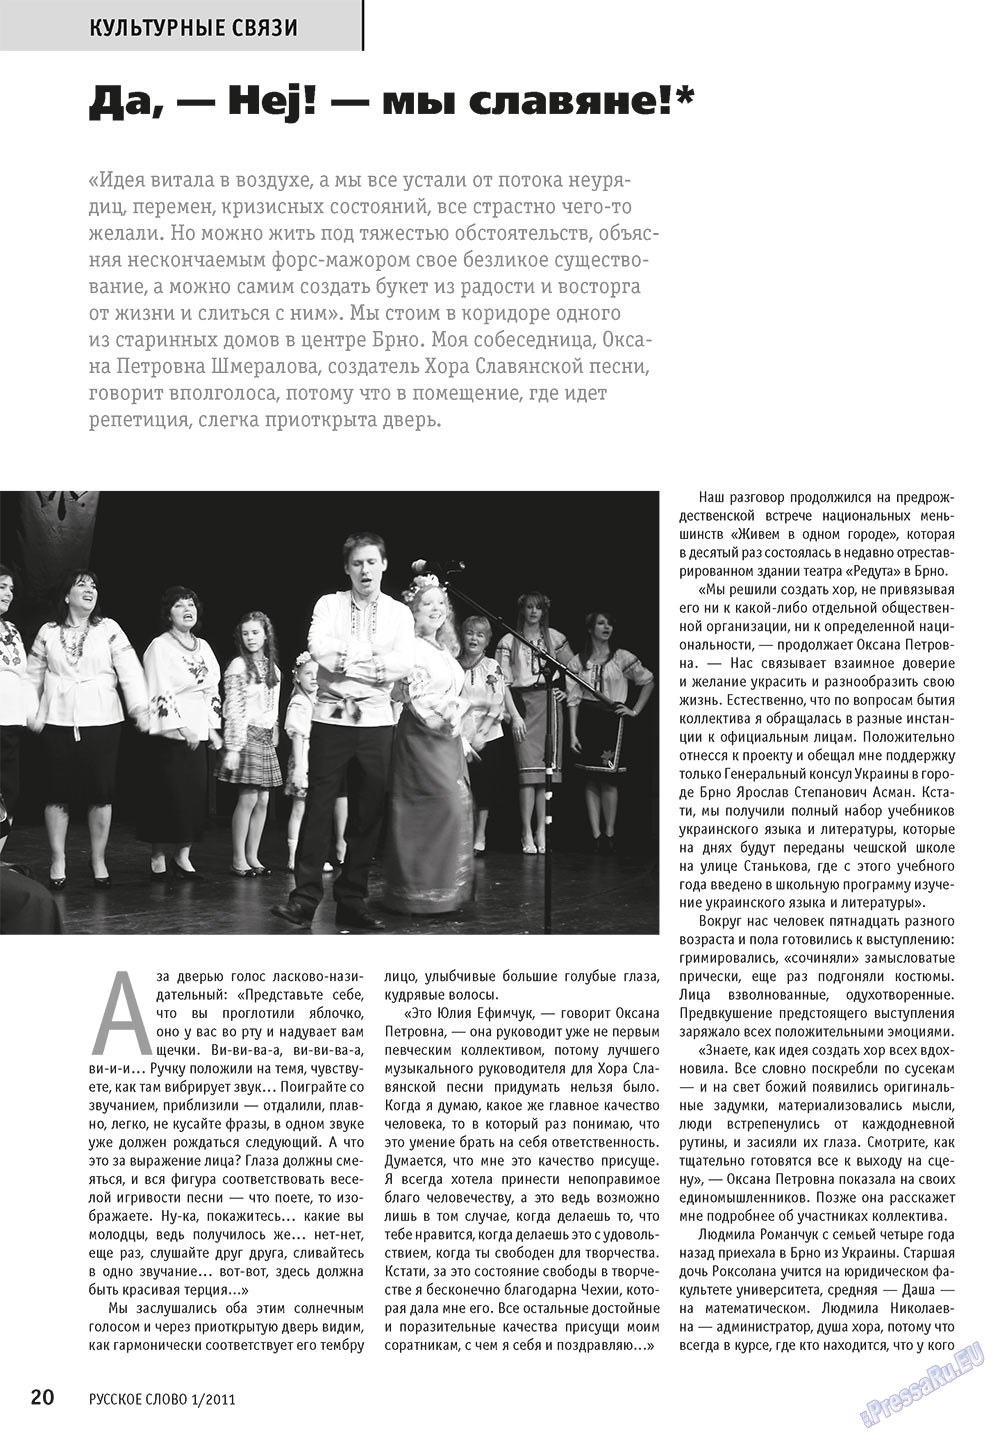 Русское слово, журнал. 2011 №1 стр.22